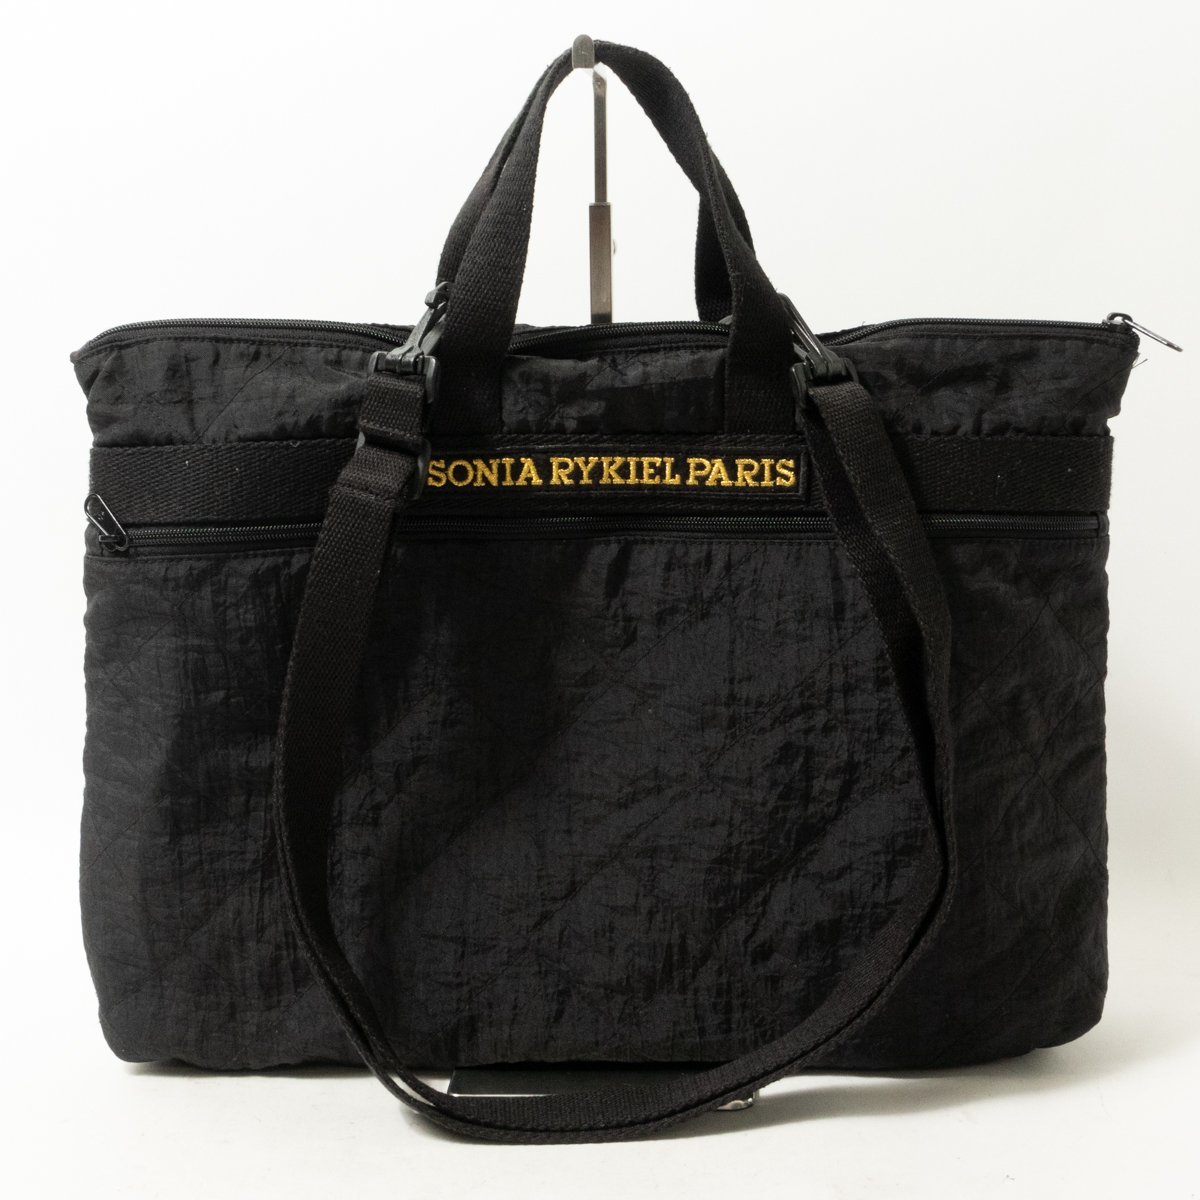 SONIA RYKIEL PARIS 2WAYバッグ ソニアリキエル ブラック 黒 刺繍ロゴ ナイロン ショルダーバッグ ハンドバッグ bag 鞄 婦人 レディース_画像1